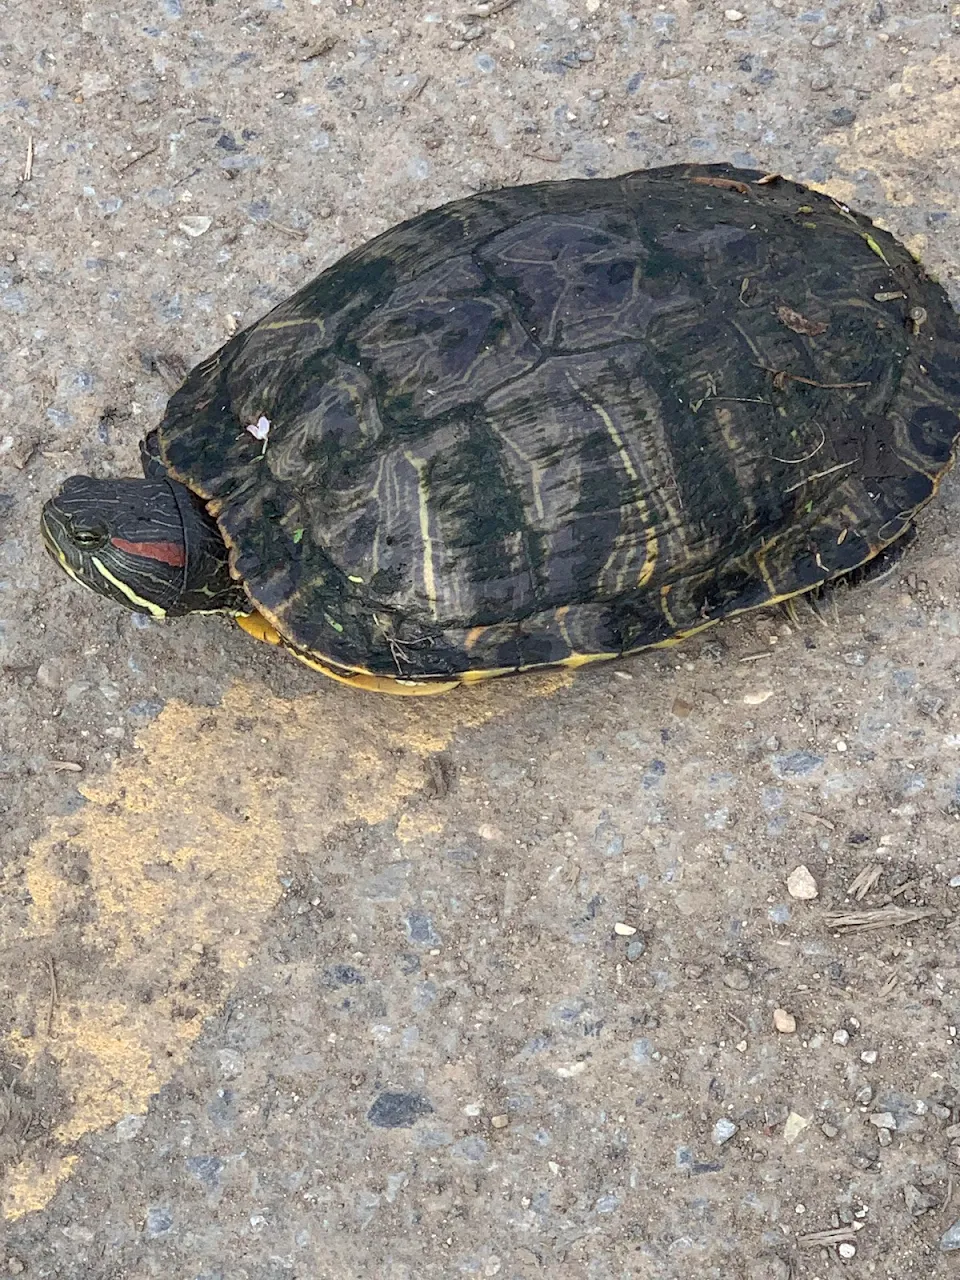 Turtle, met on a bike ride